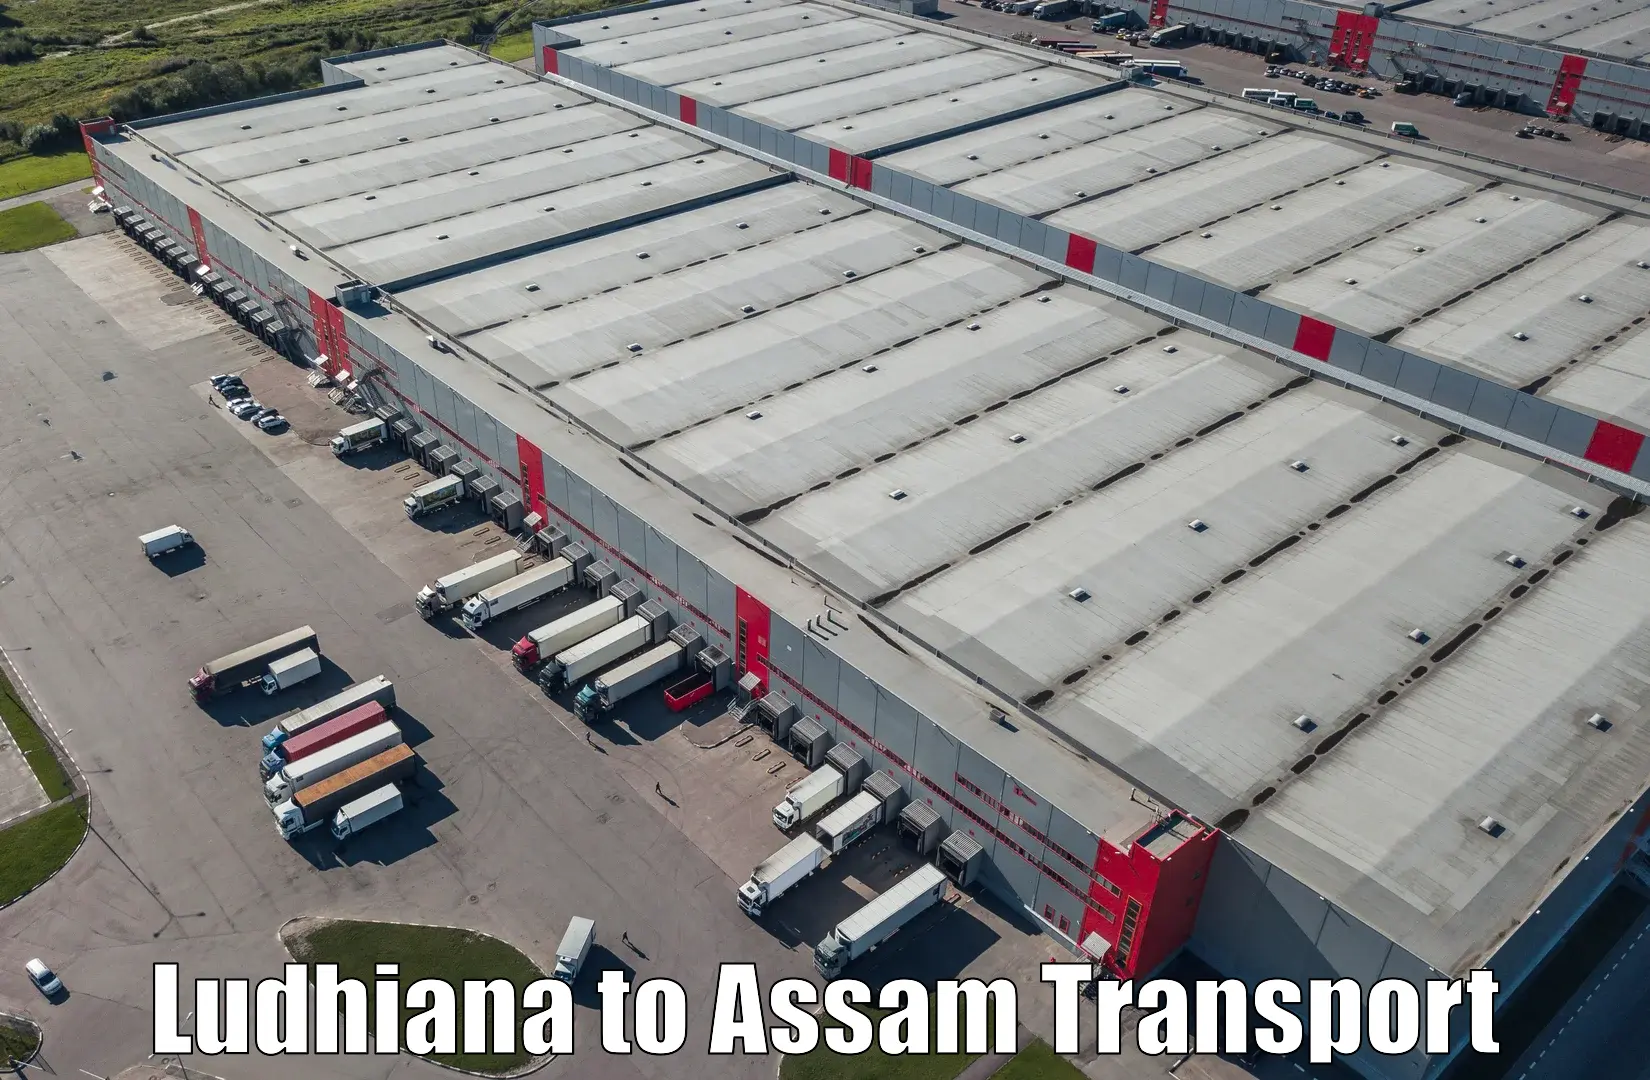 Nearby transport service Ludhiana to Baksha Bodoland